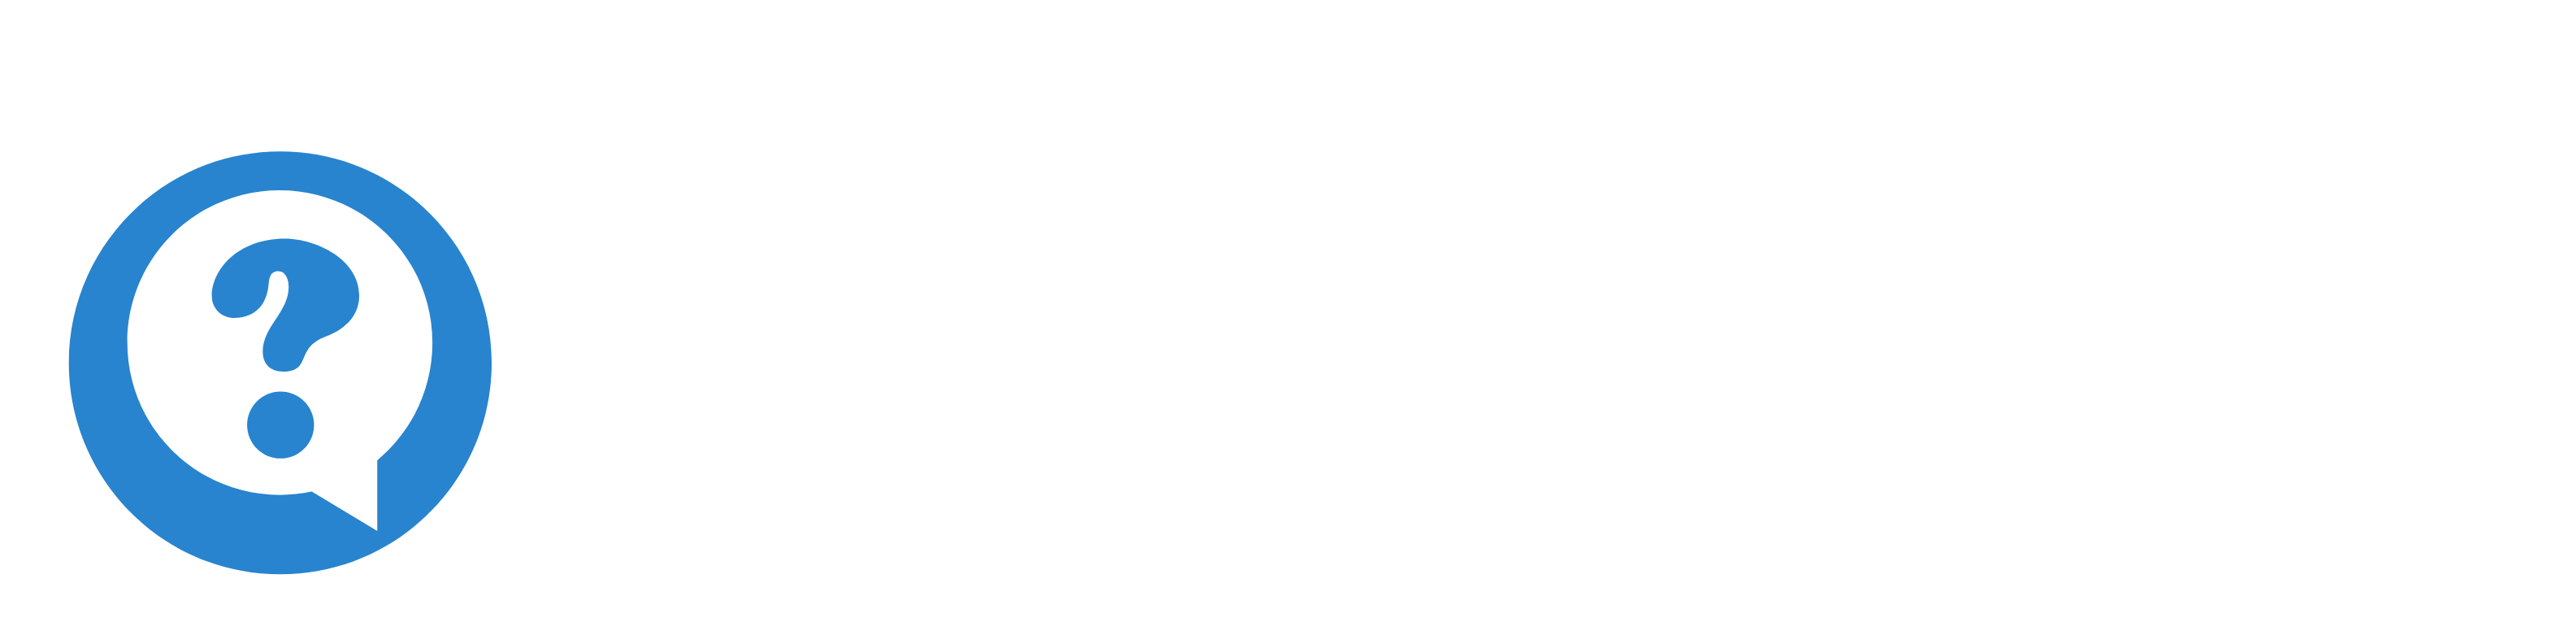 Trendy Board Logo